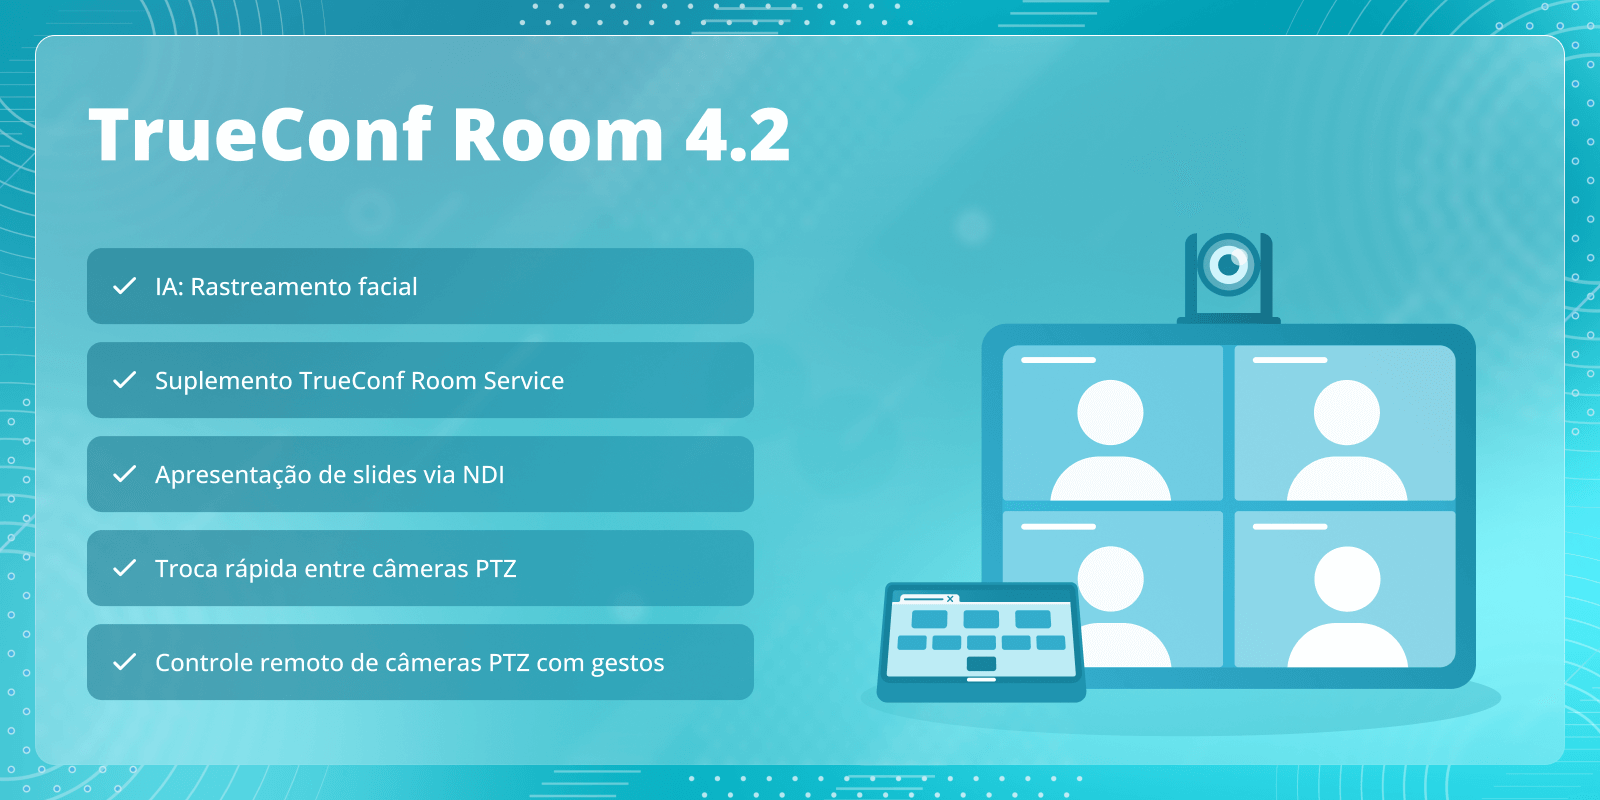 TrueConf Room 4.2: suplemento TrueConf Room Service e rastreamento facial 7